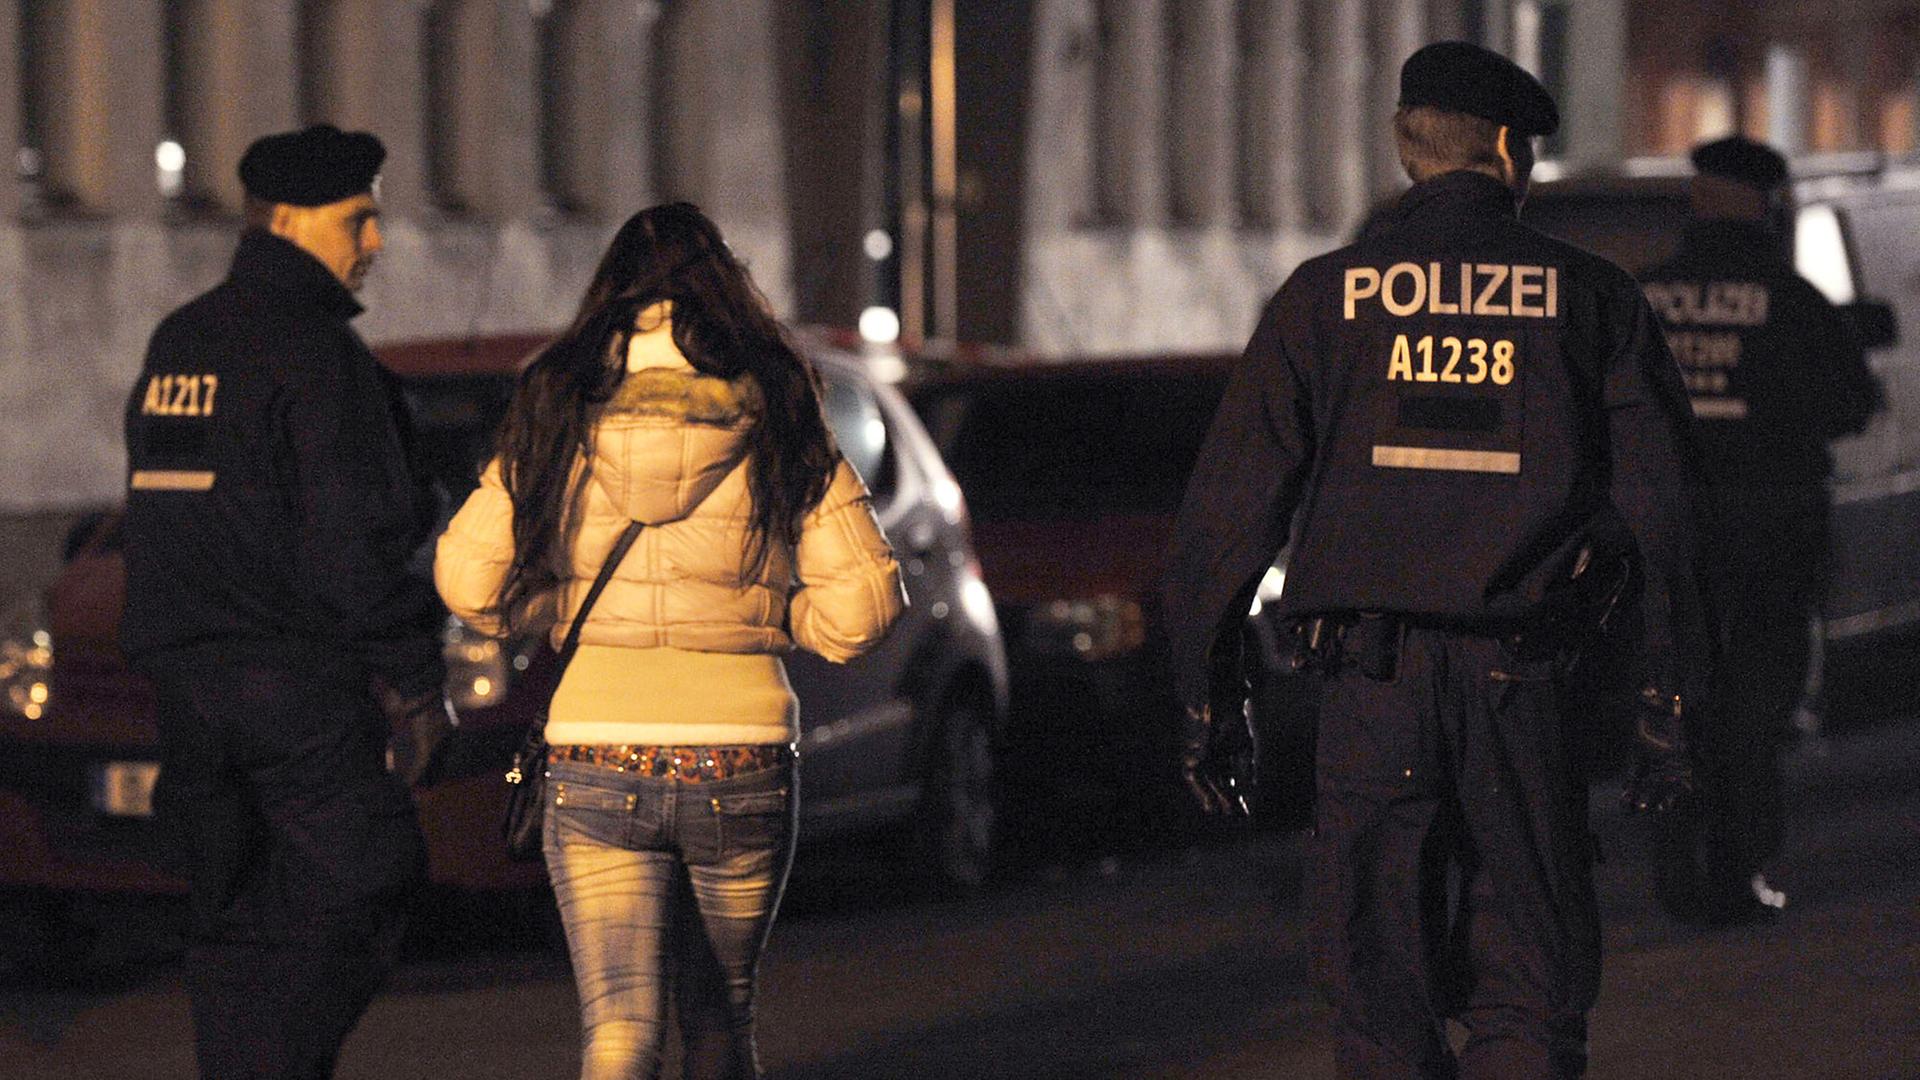 Polizisten begleiten bei einem Polizeieinsatz mit Durchsuchungen am 08.11.2013 in der Kurfürstenstraße in Berlin eine Frau zu einem Kontrollpunkt.